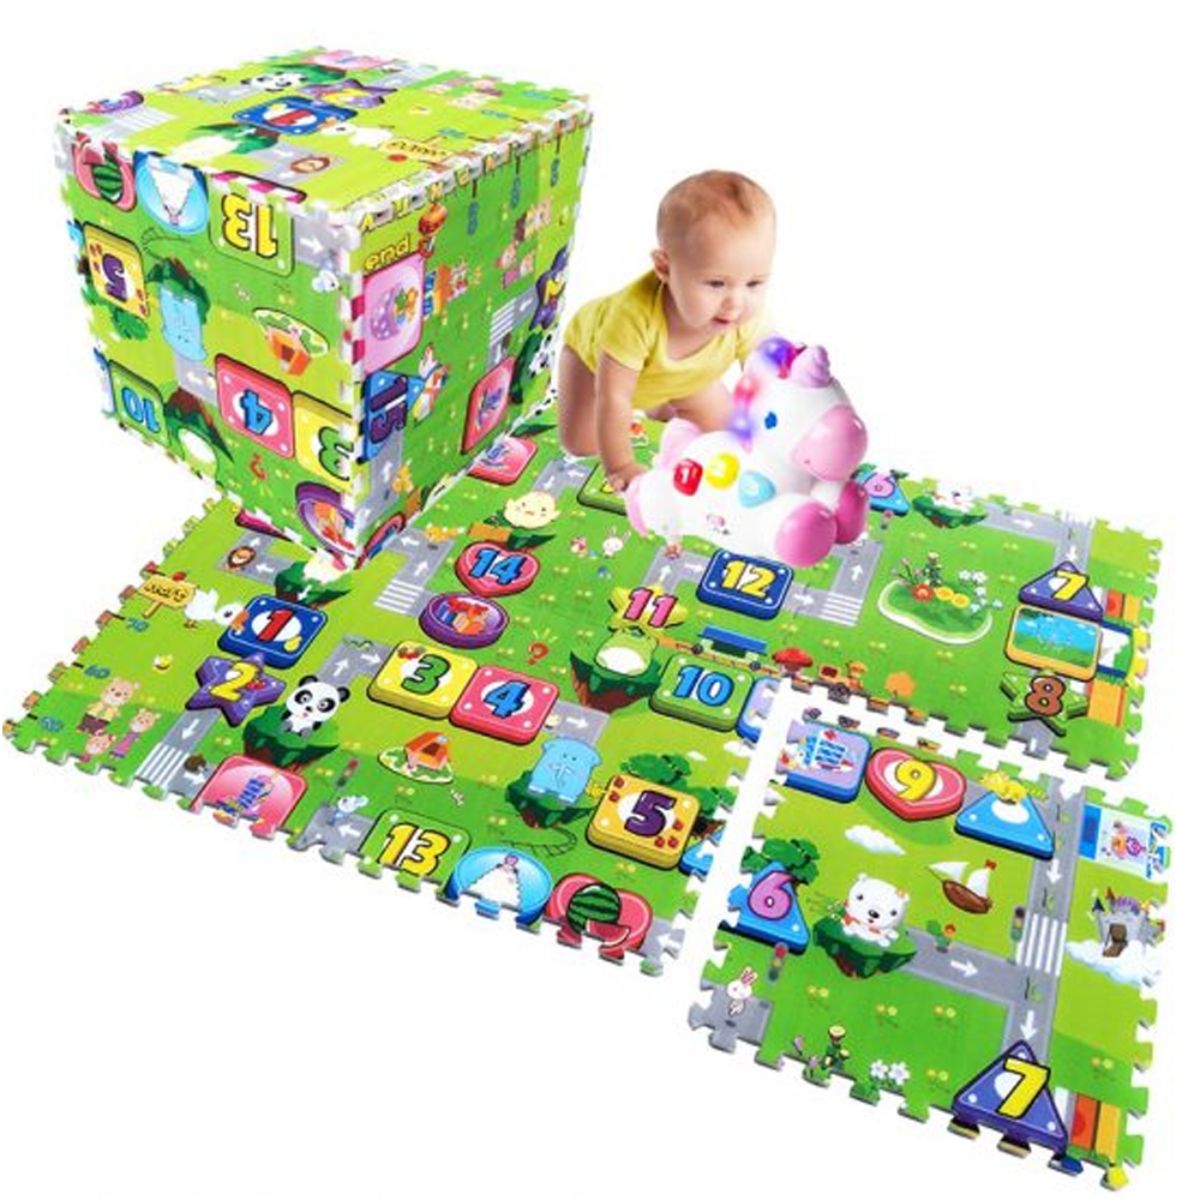 Camera copilului - Covor de joaca puzzle pentru copii din spuma EVA, 60 x 60 cm, 4 piese - EP 1008A, hectarul.ro